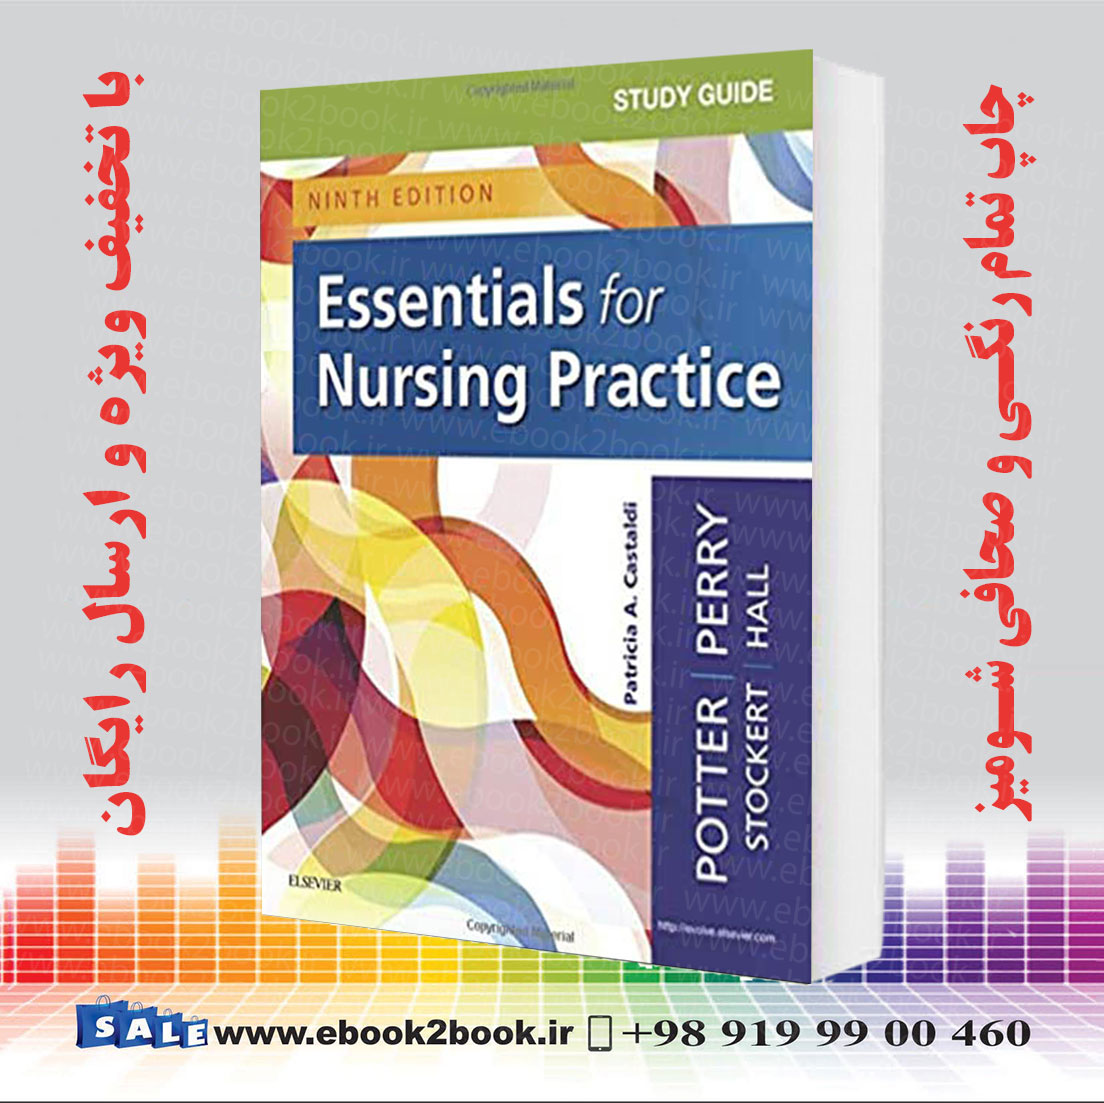 خرید کتاب Study Guide for Essentials for Nursing Practice, 9th Edition